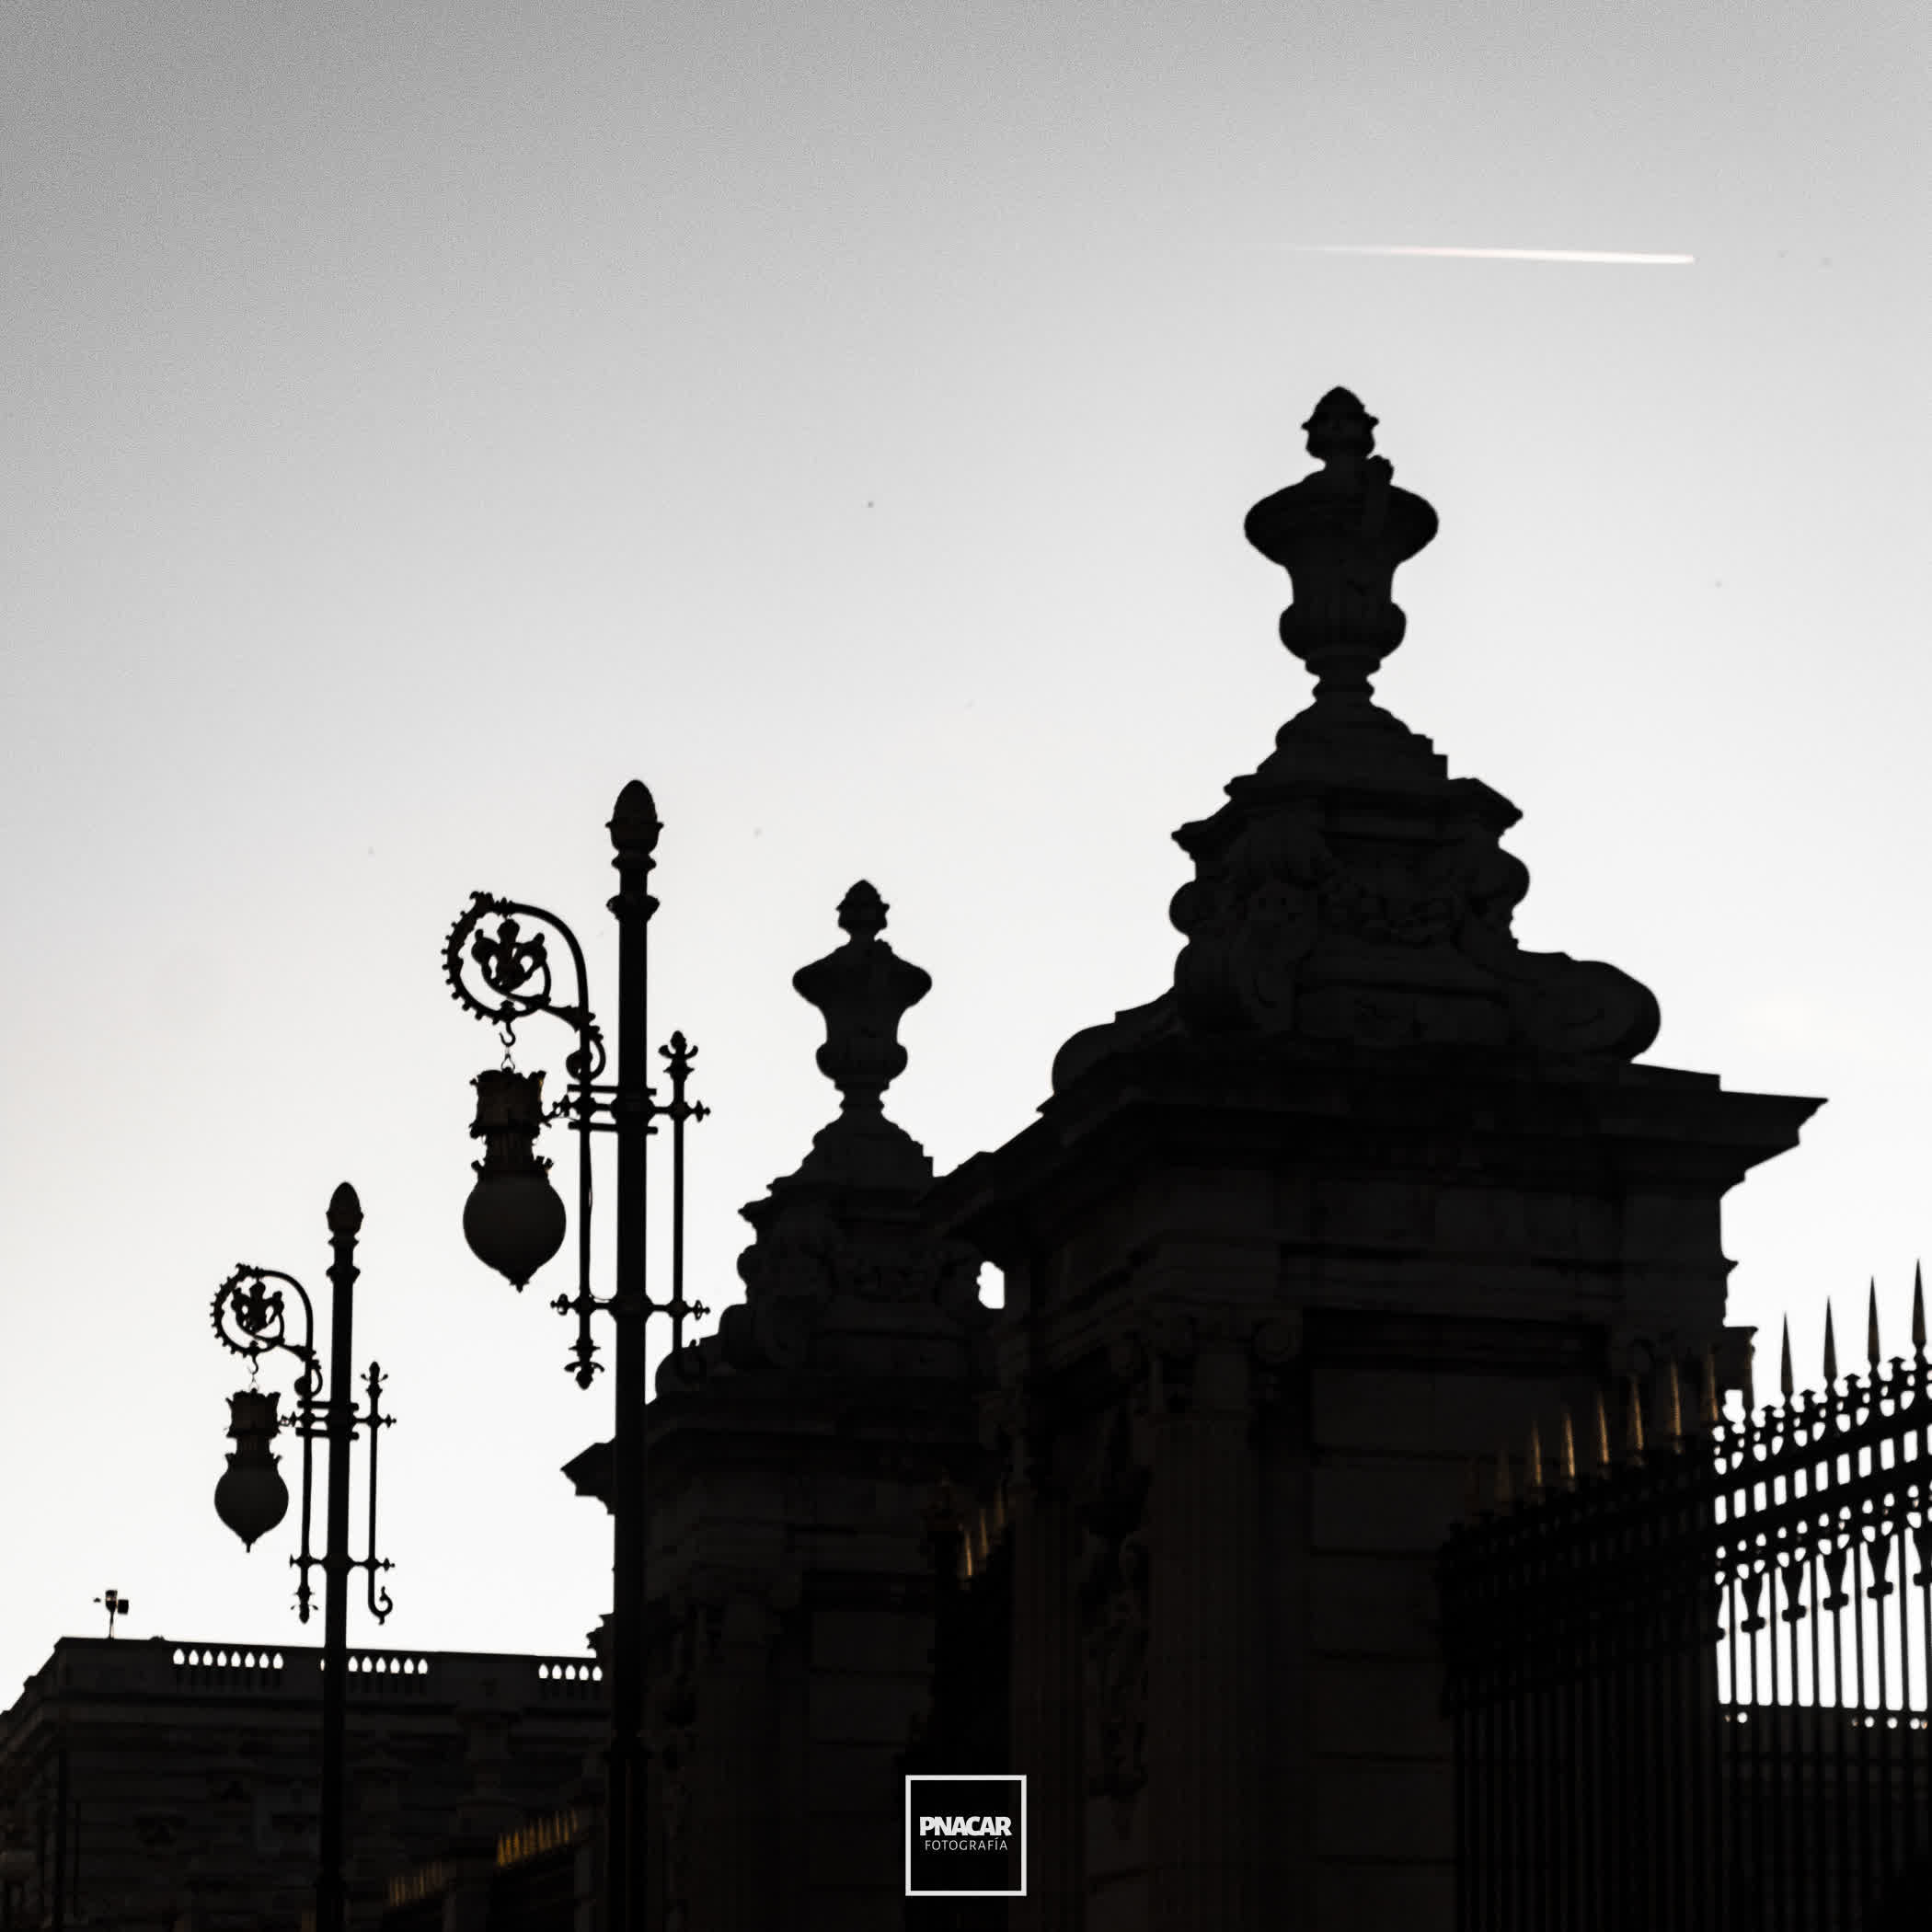 Madrid's Royal Palace at sunset